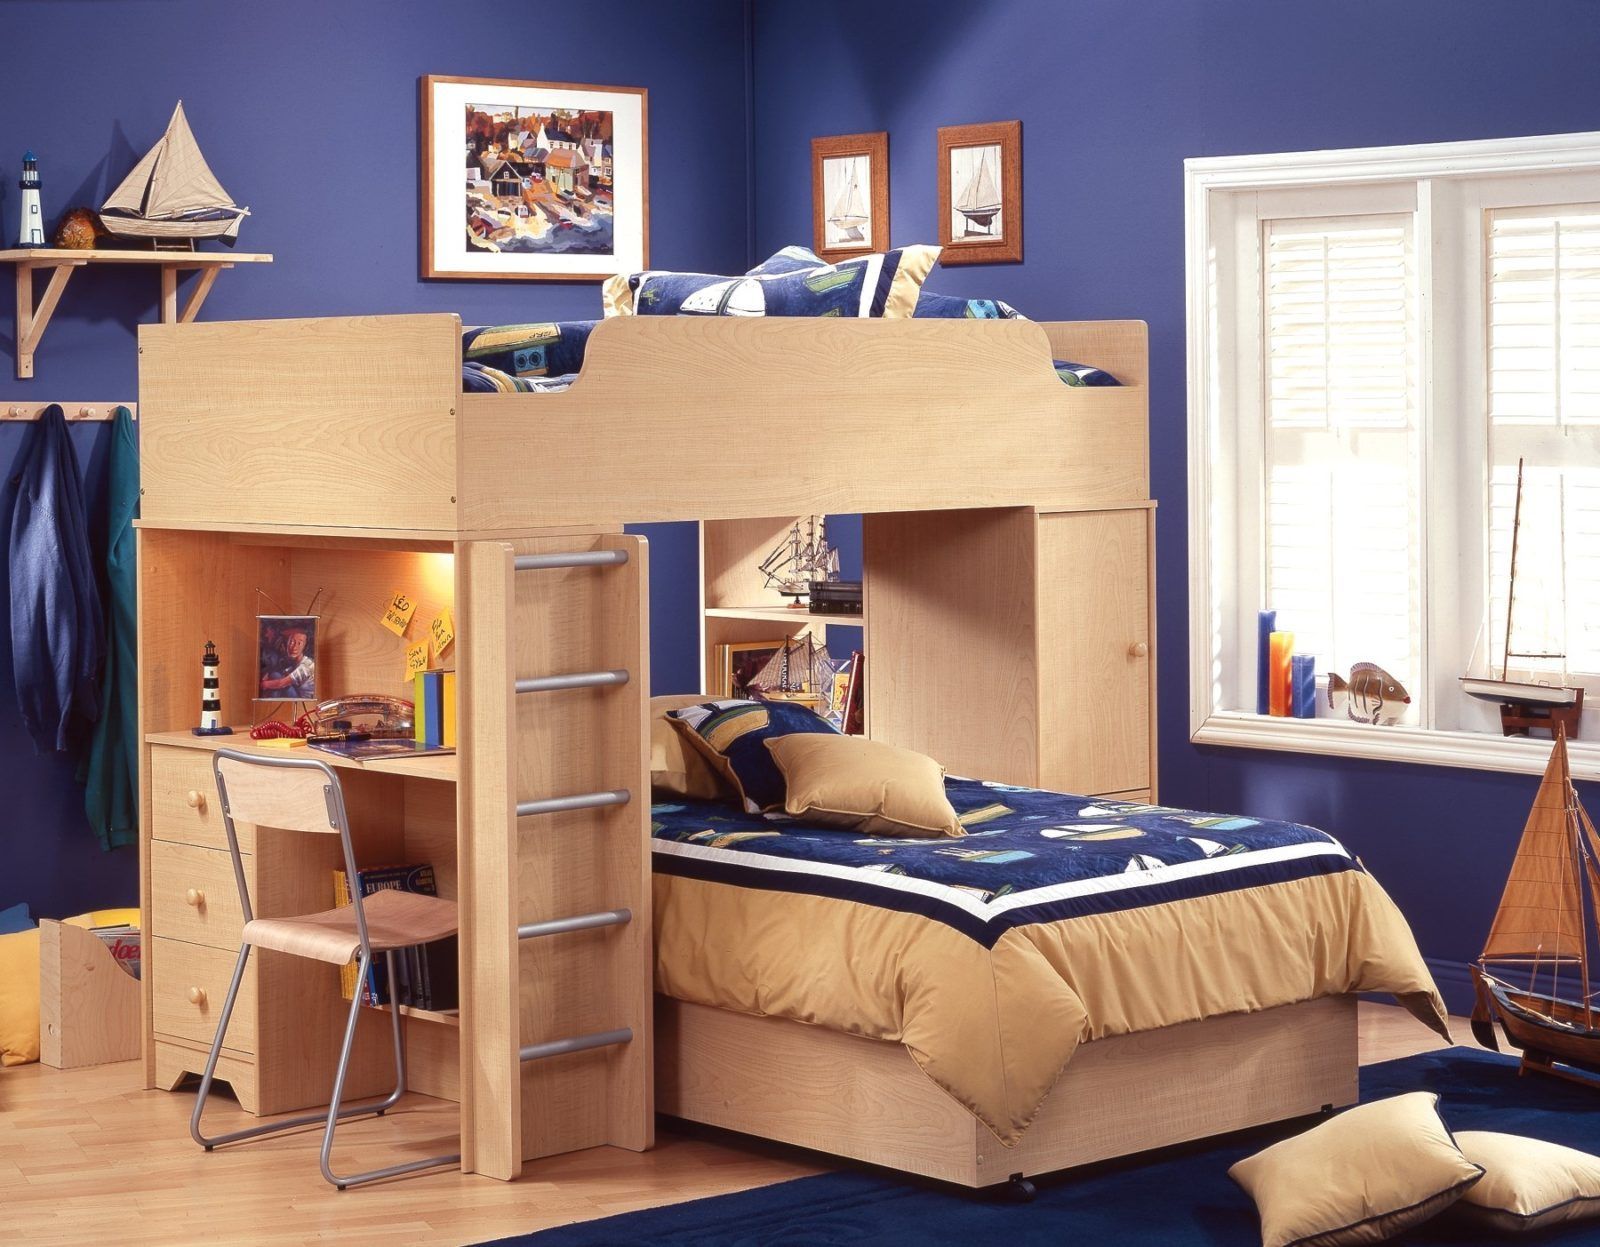 Дизайн детской комнаты для близнецов подборка вариантов🔴 Детская комната для мальчика фотоподборка